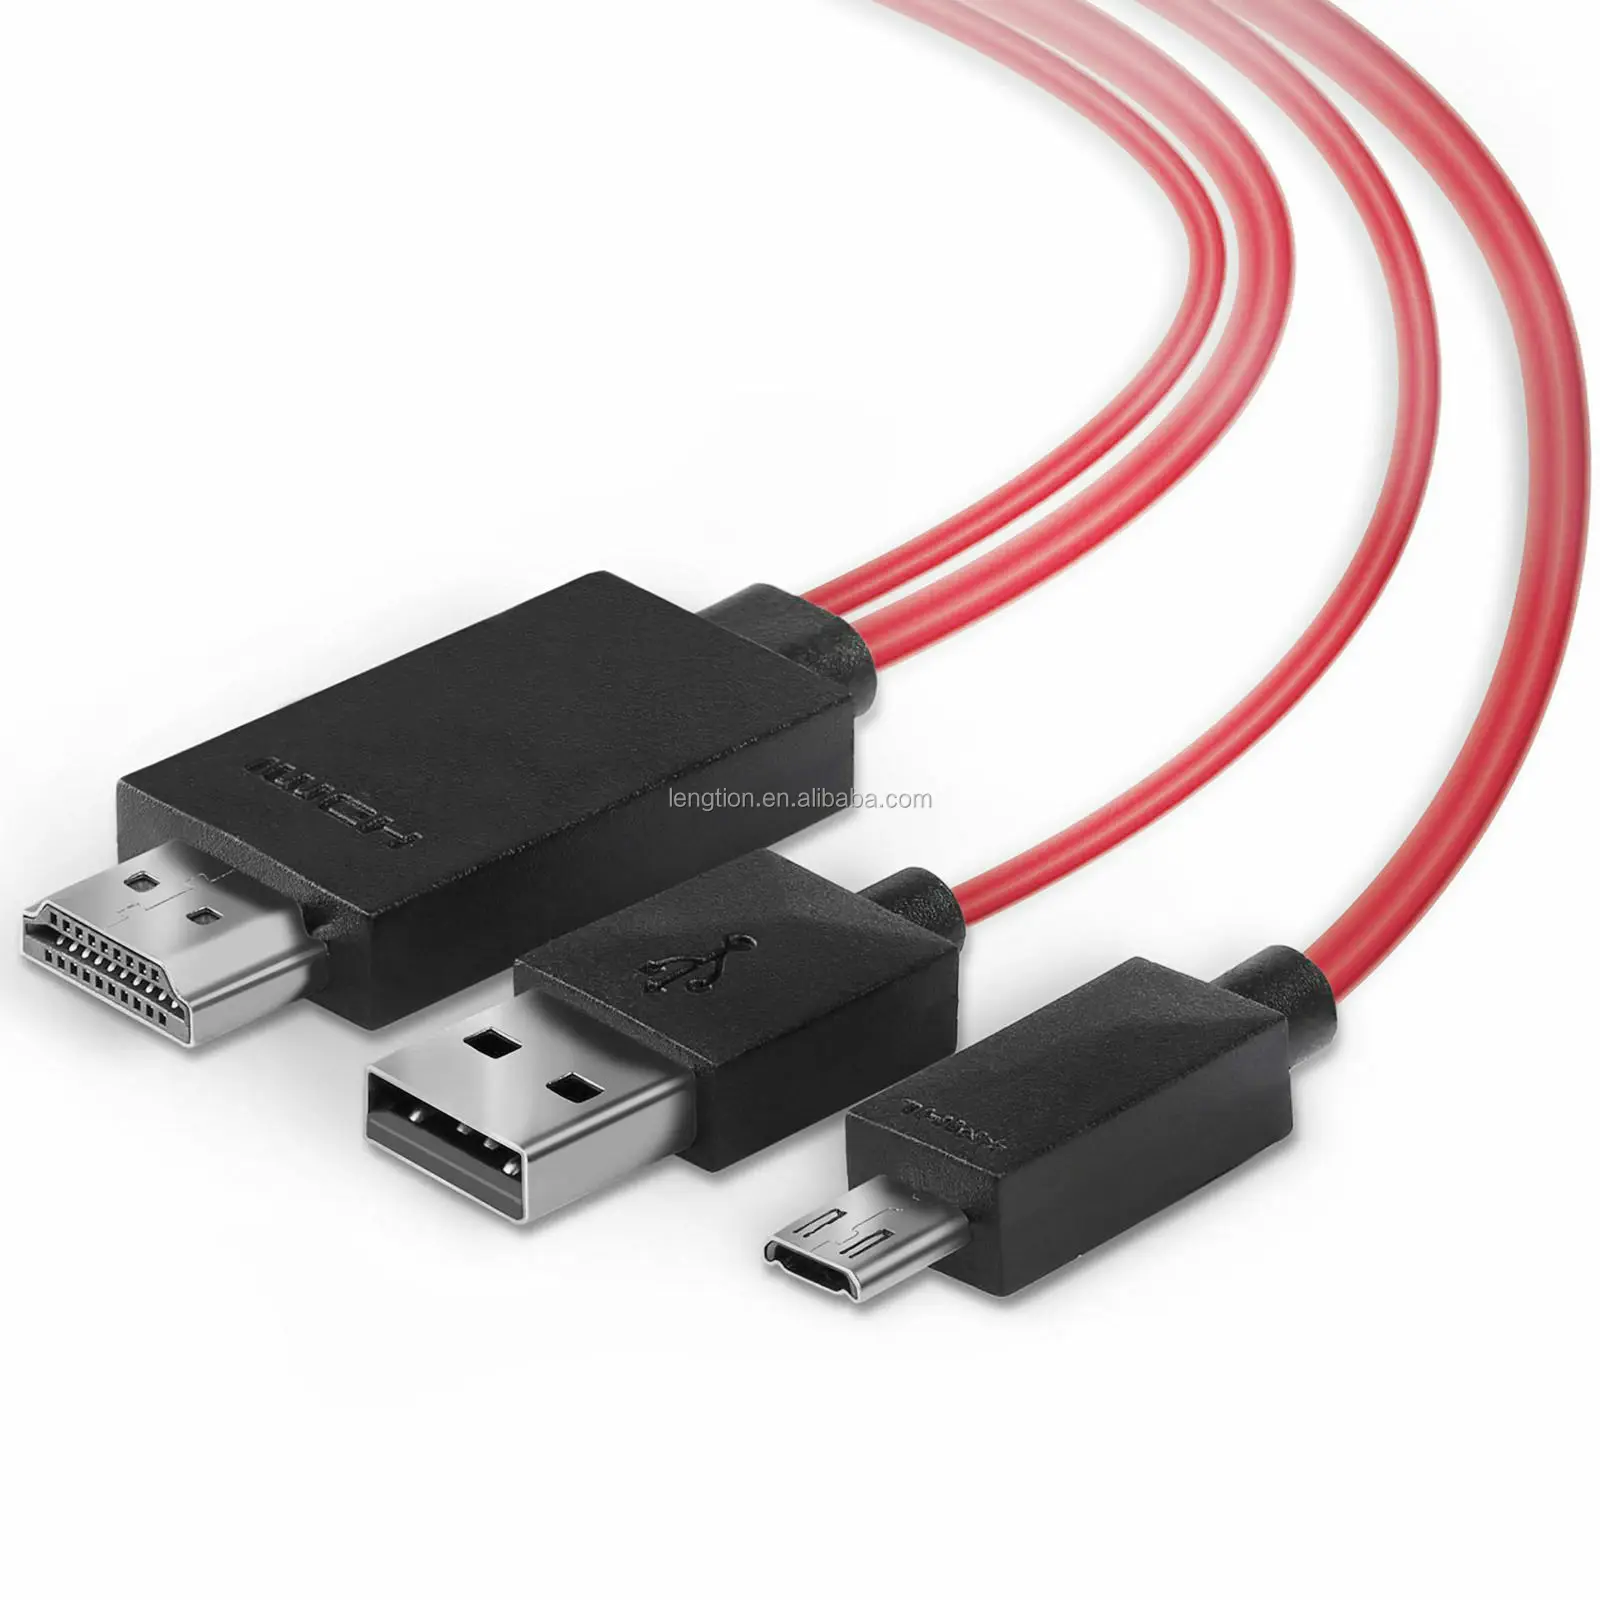 Micro USB Adaptador Convertidor MHL a HDMI HDTV plomo Samsung Galaxy S4 S3 & Note 2 